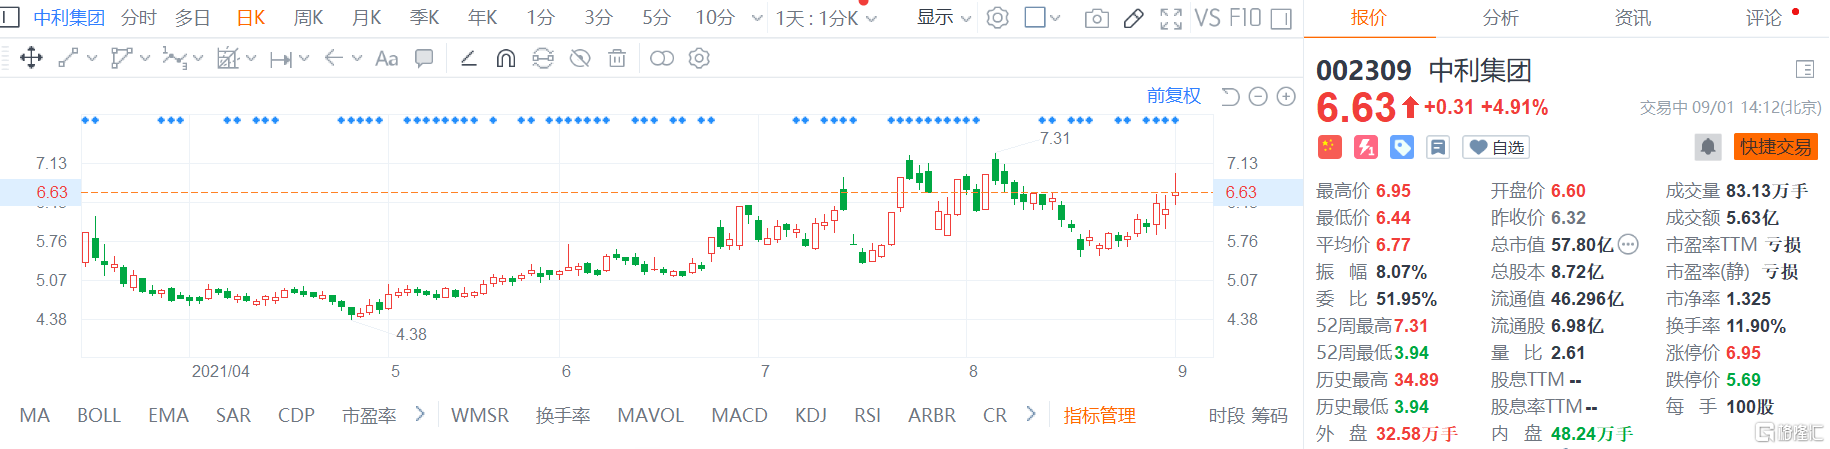 中利集团(002309.SZ)盘中触及涨停价6.95元后回来 最新总市值57.8亿